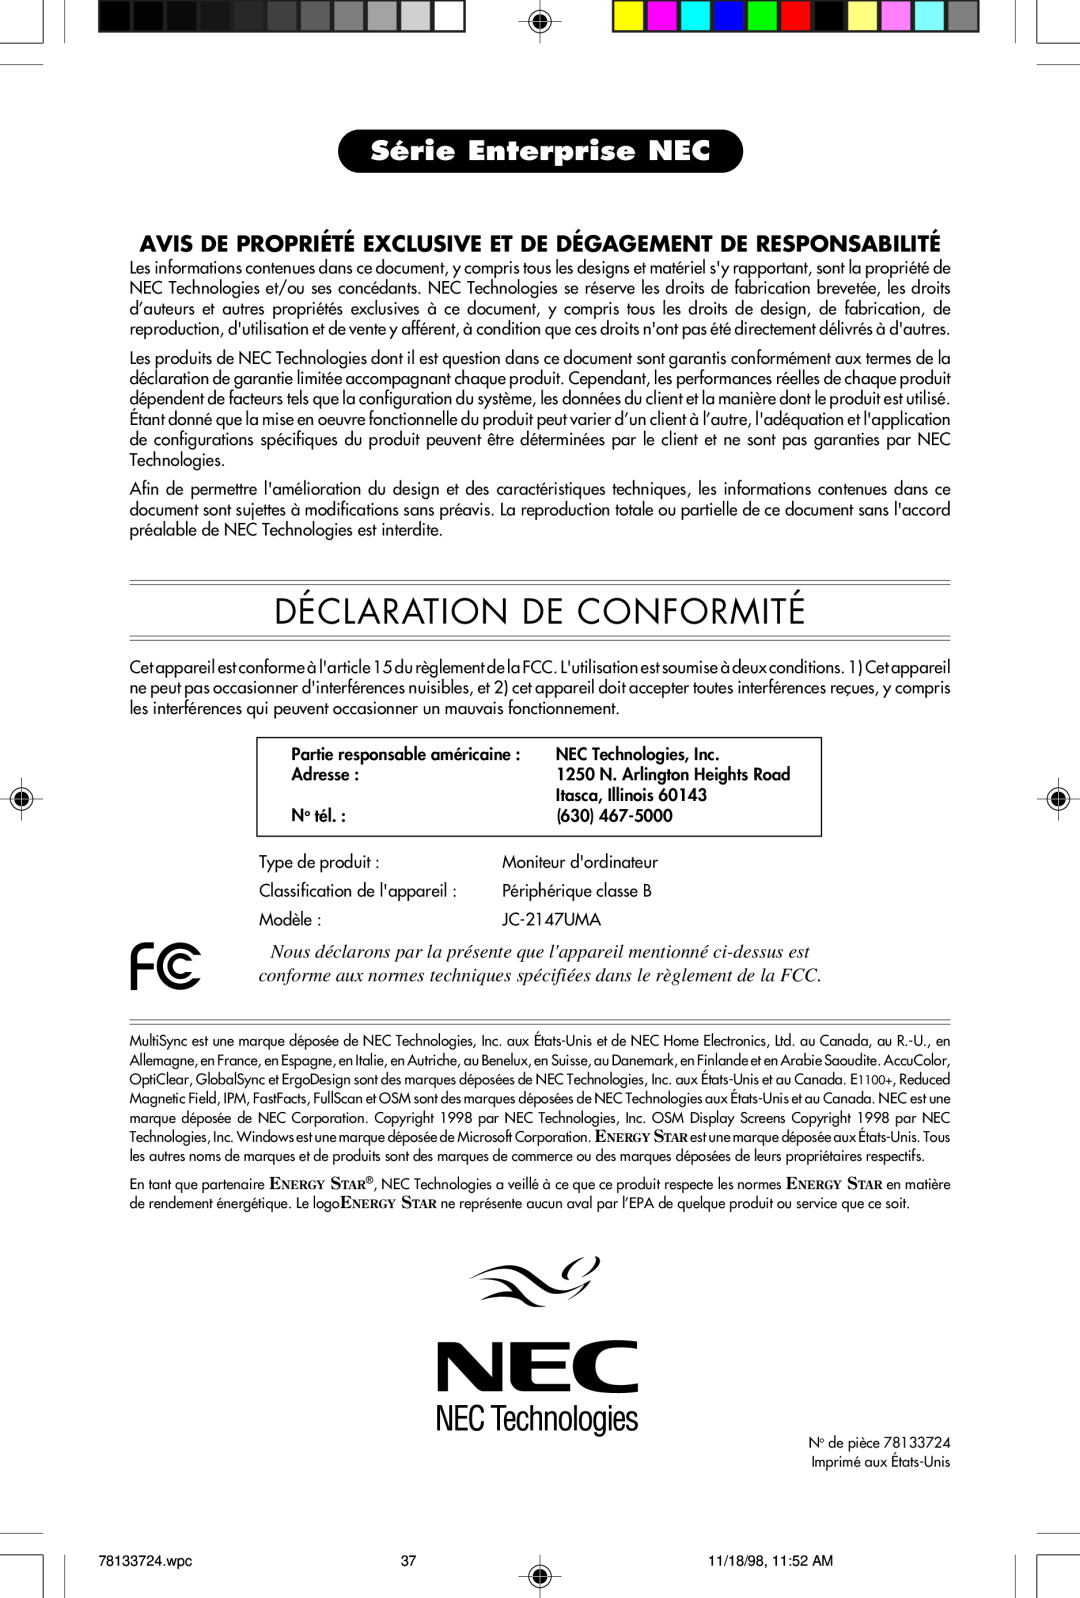 NEC E1100+ Déclaration De Conformité, Série Enterprise NEC, Avis De Propriété Exclusive Et De Dégagement De Responsabilité 